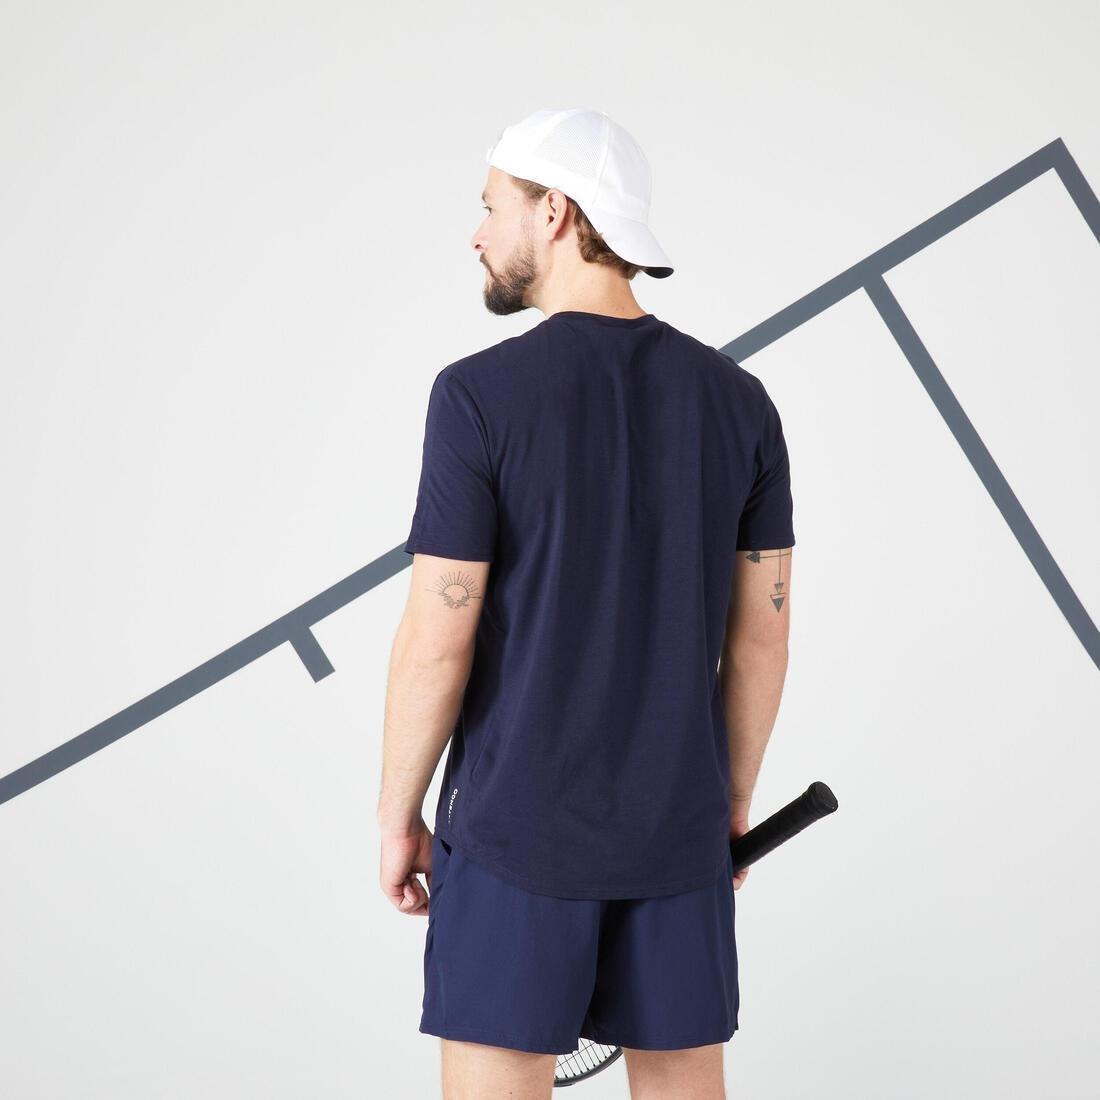 ARTENGO - Mens Tennis T-Shirt Tts Soft, Blue